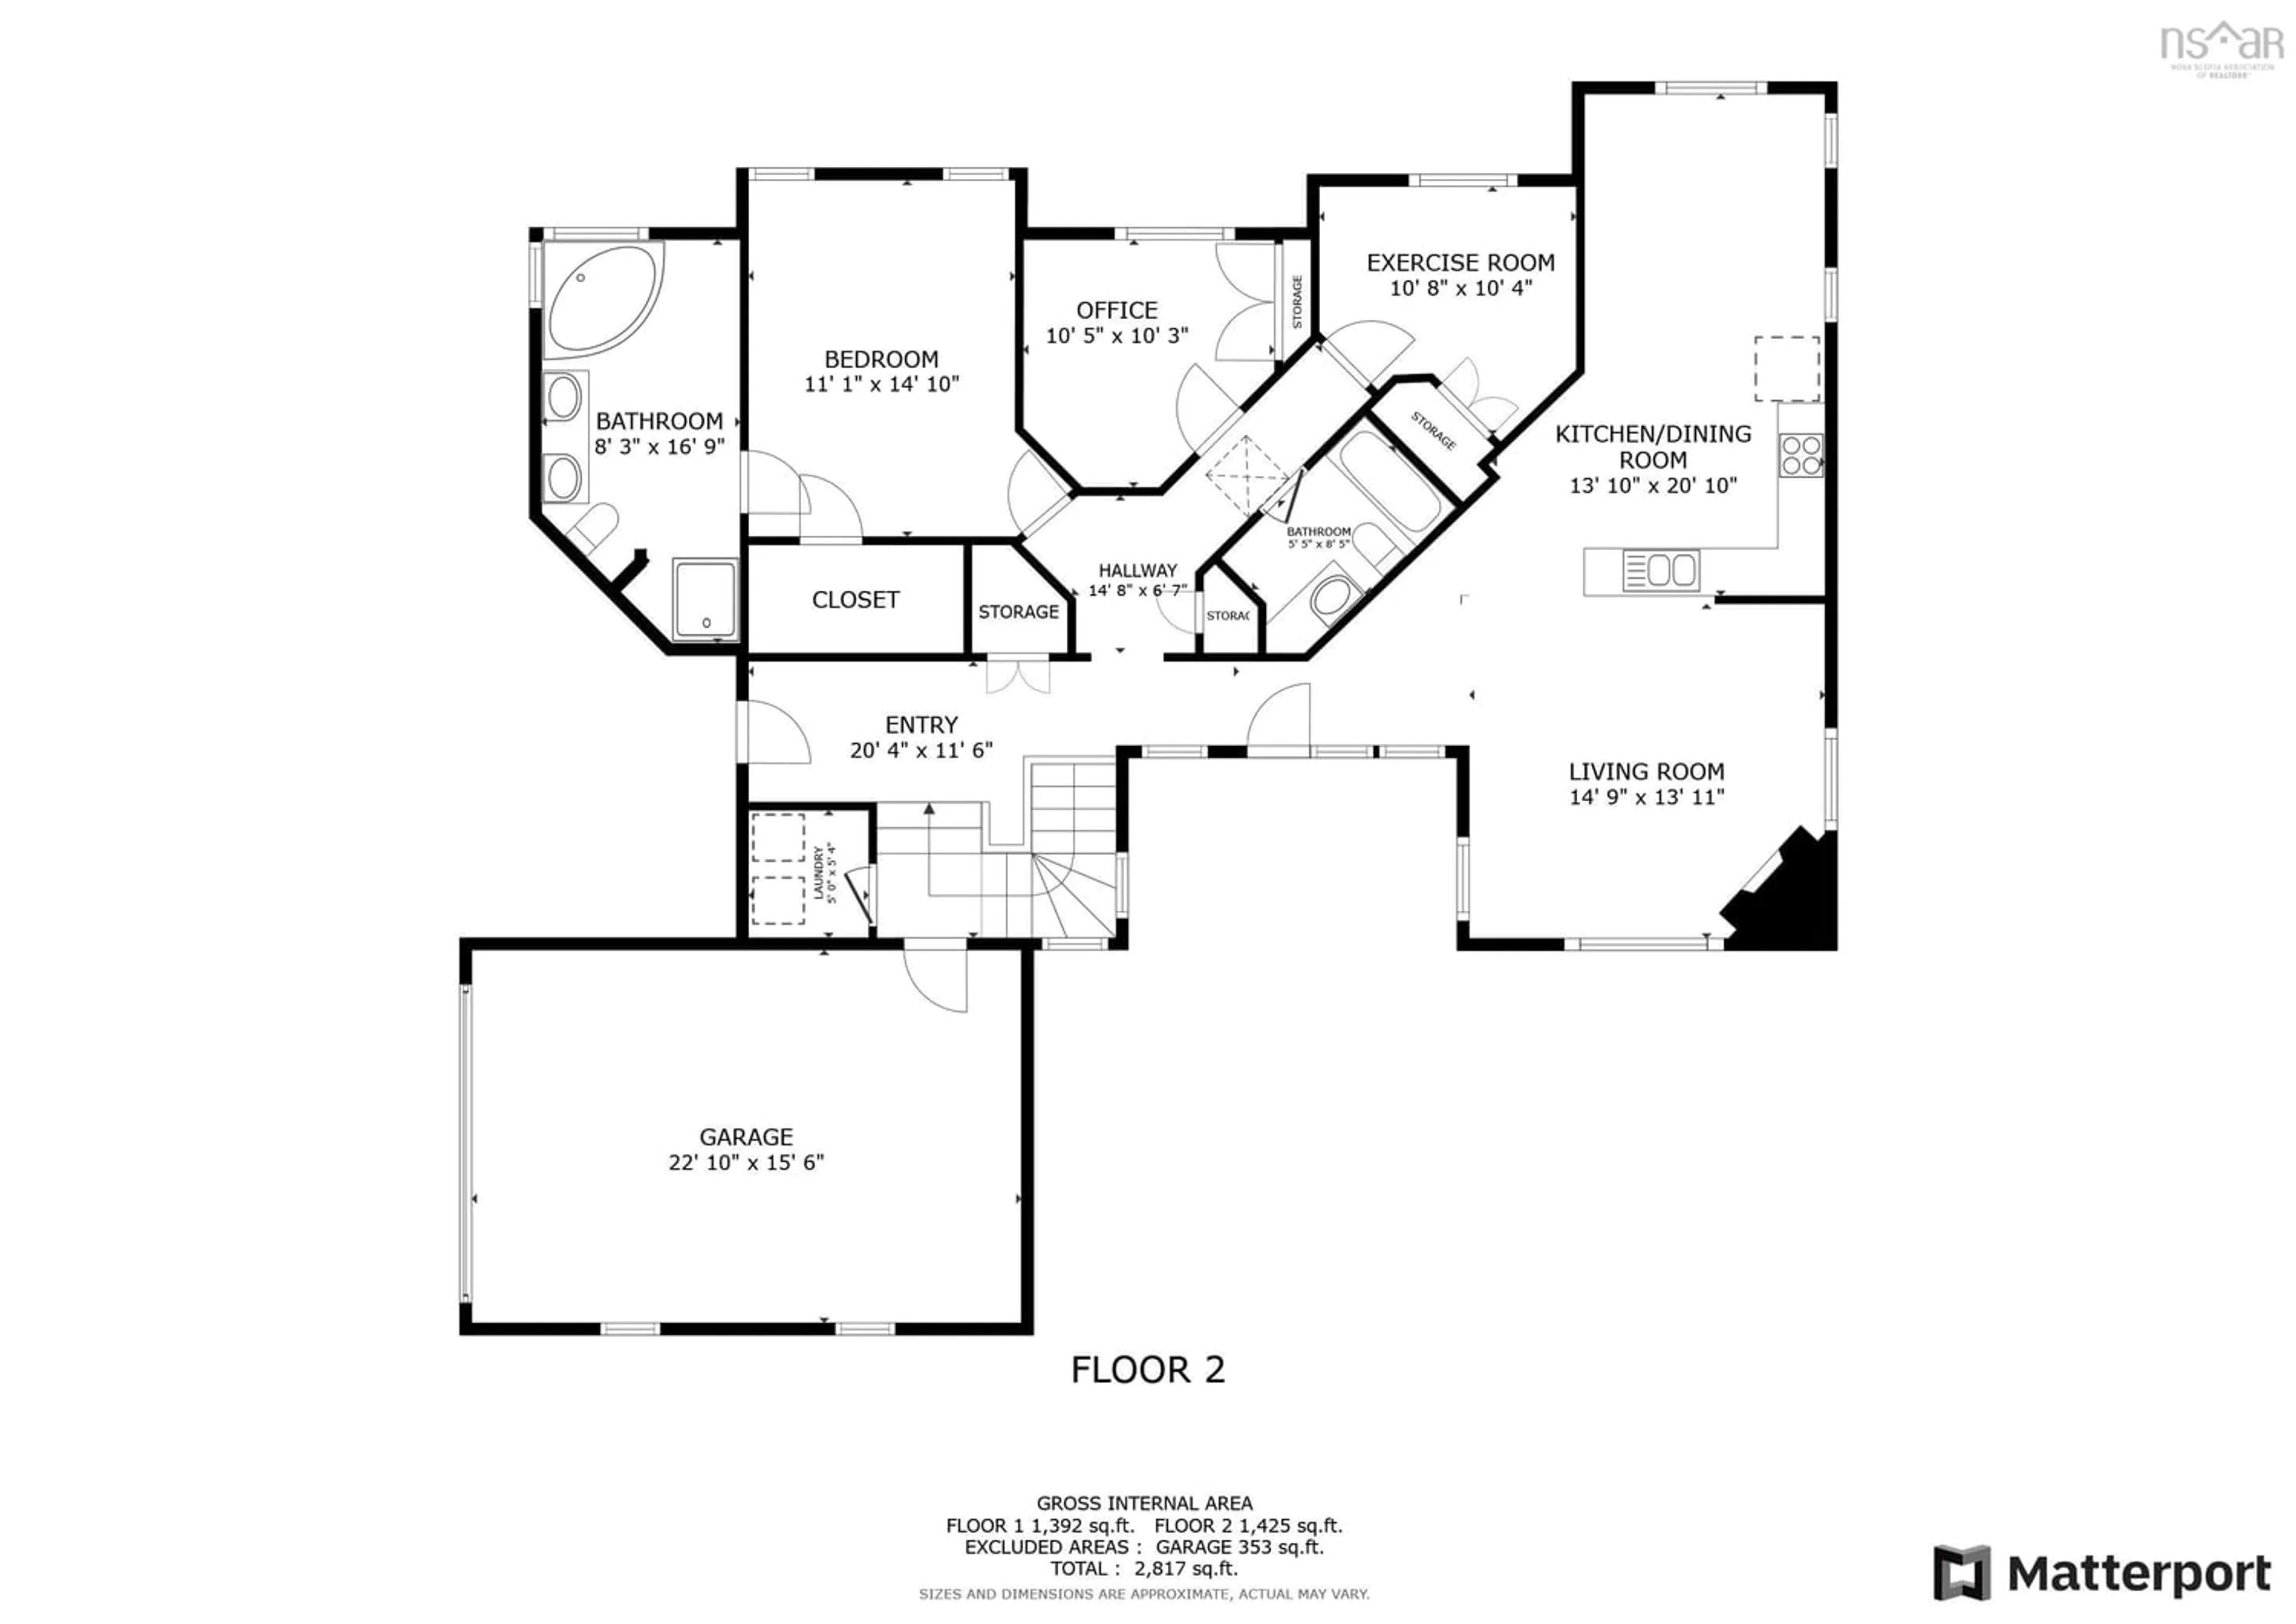 Floor plan for 26 Brecken Ridge Lane, Lower Sackville Nova Scotia B4C 4G9